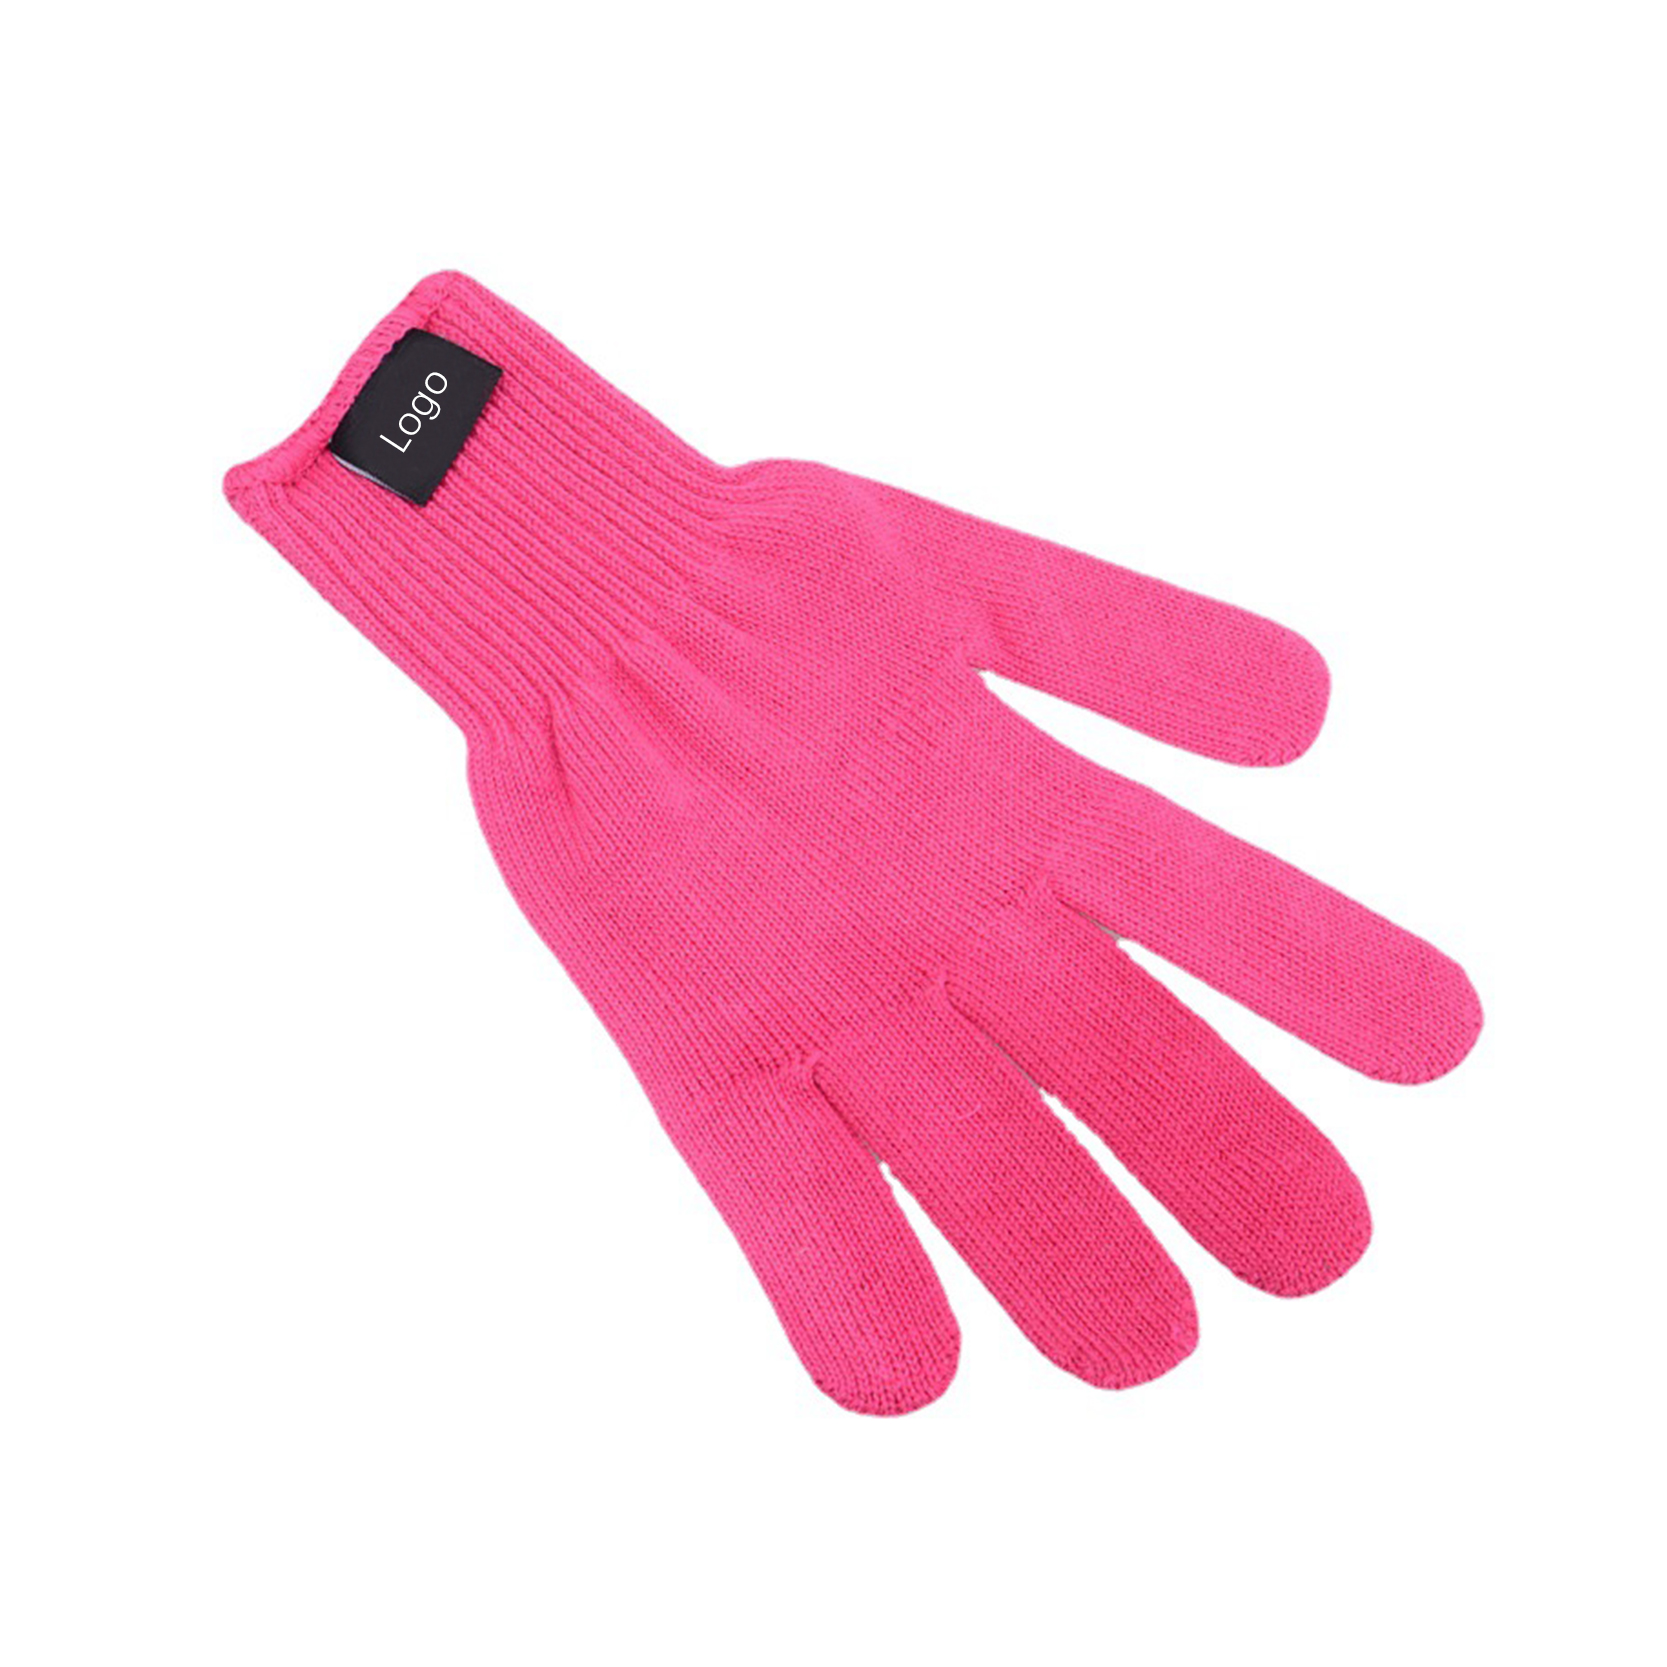 Professionelle hitzebeständige Handschuhe für das Haarstyling Hitzeblockierung für Lockenstab, Glätteisen und Lockenstab, geeignet für linke und rechte Hände